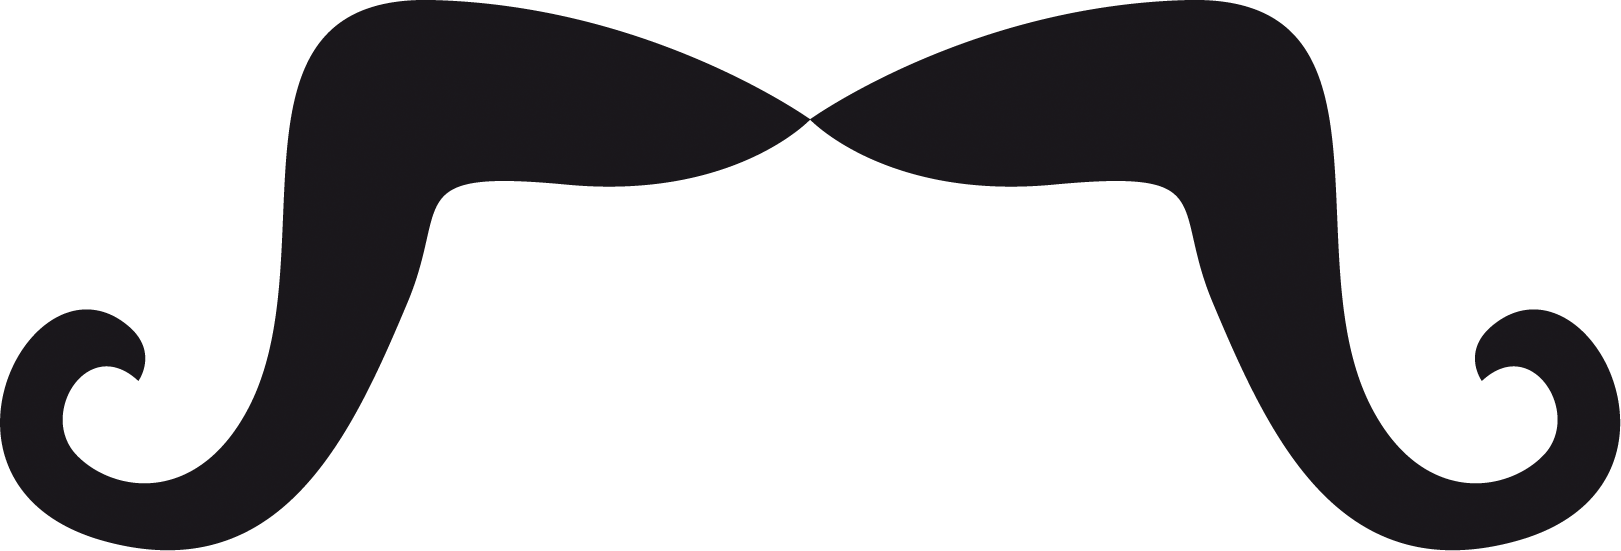 Moustache - Mexican Mustache Transparent Background (1621x551)